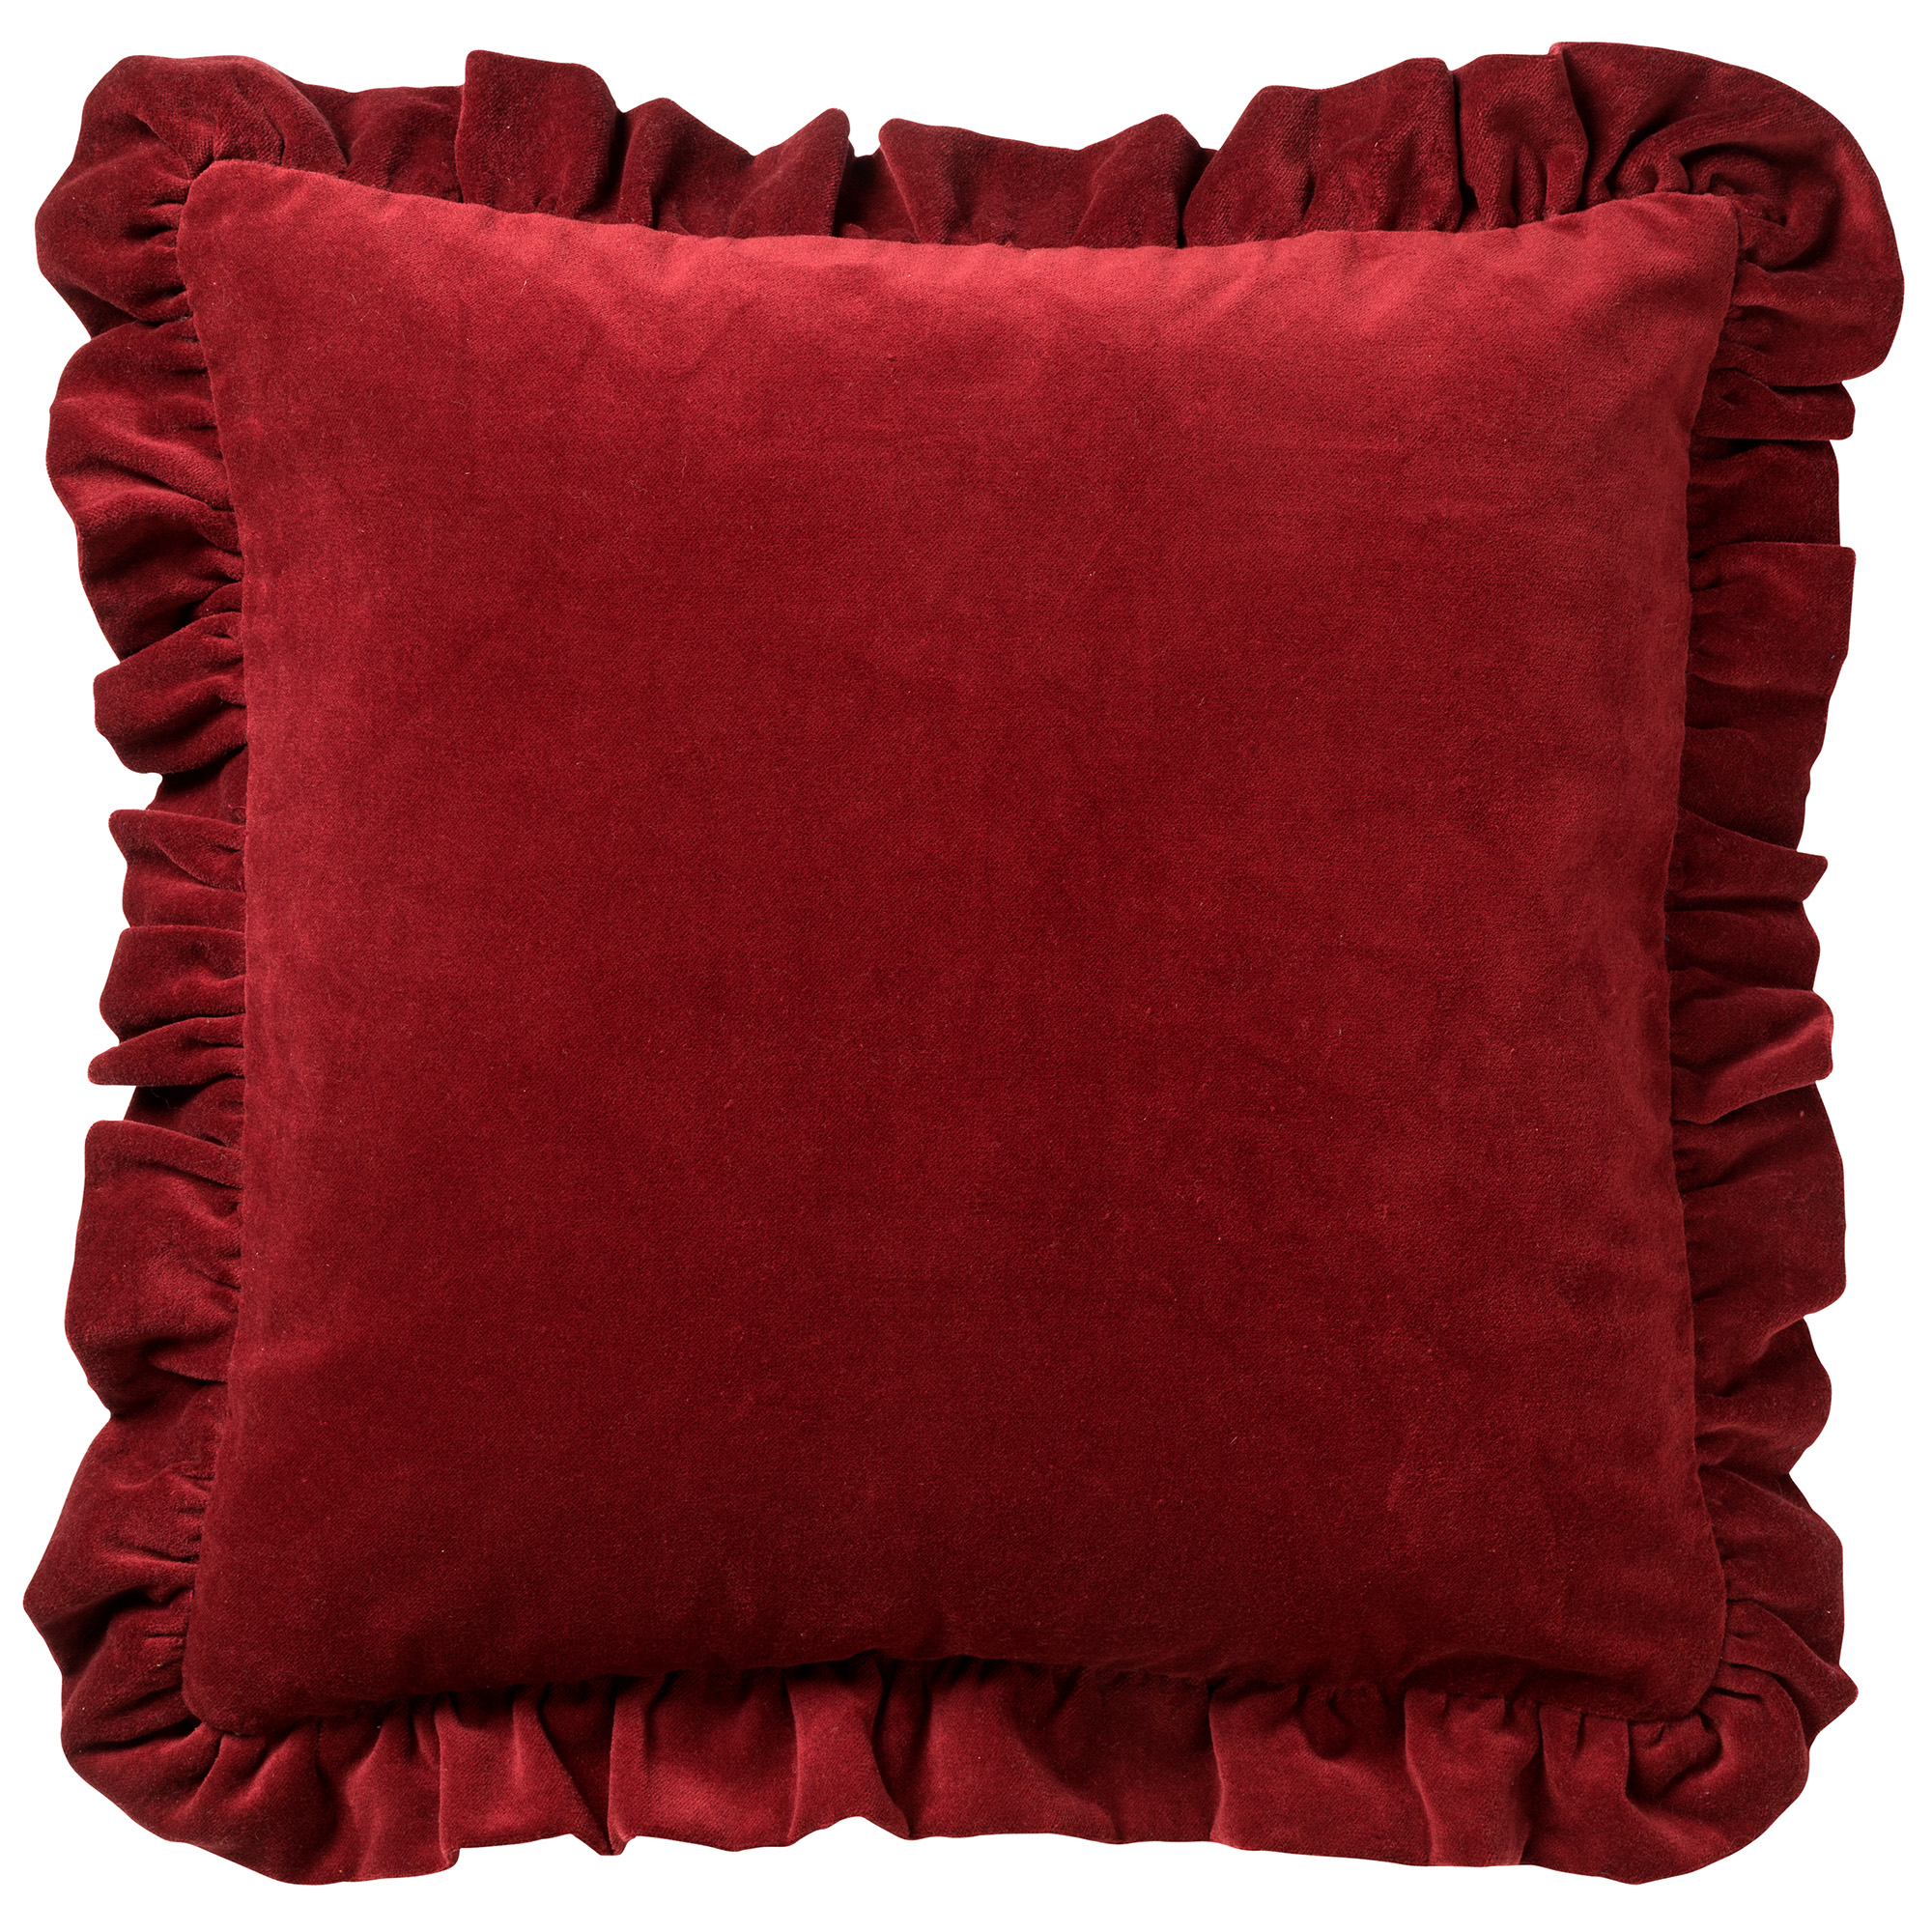 YARA - Kussenhoes velvet Merlot 45x45 cm - rood